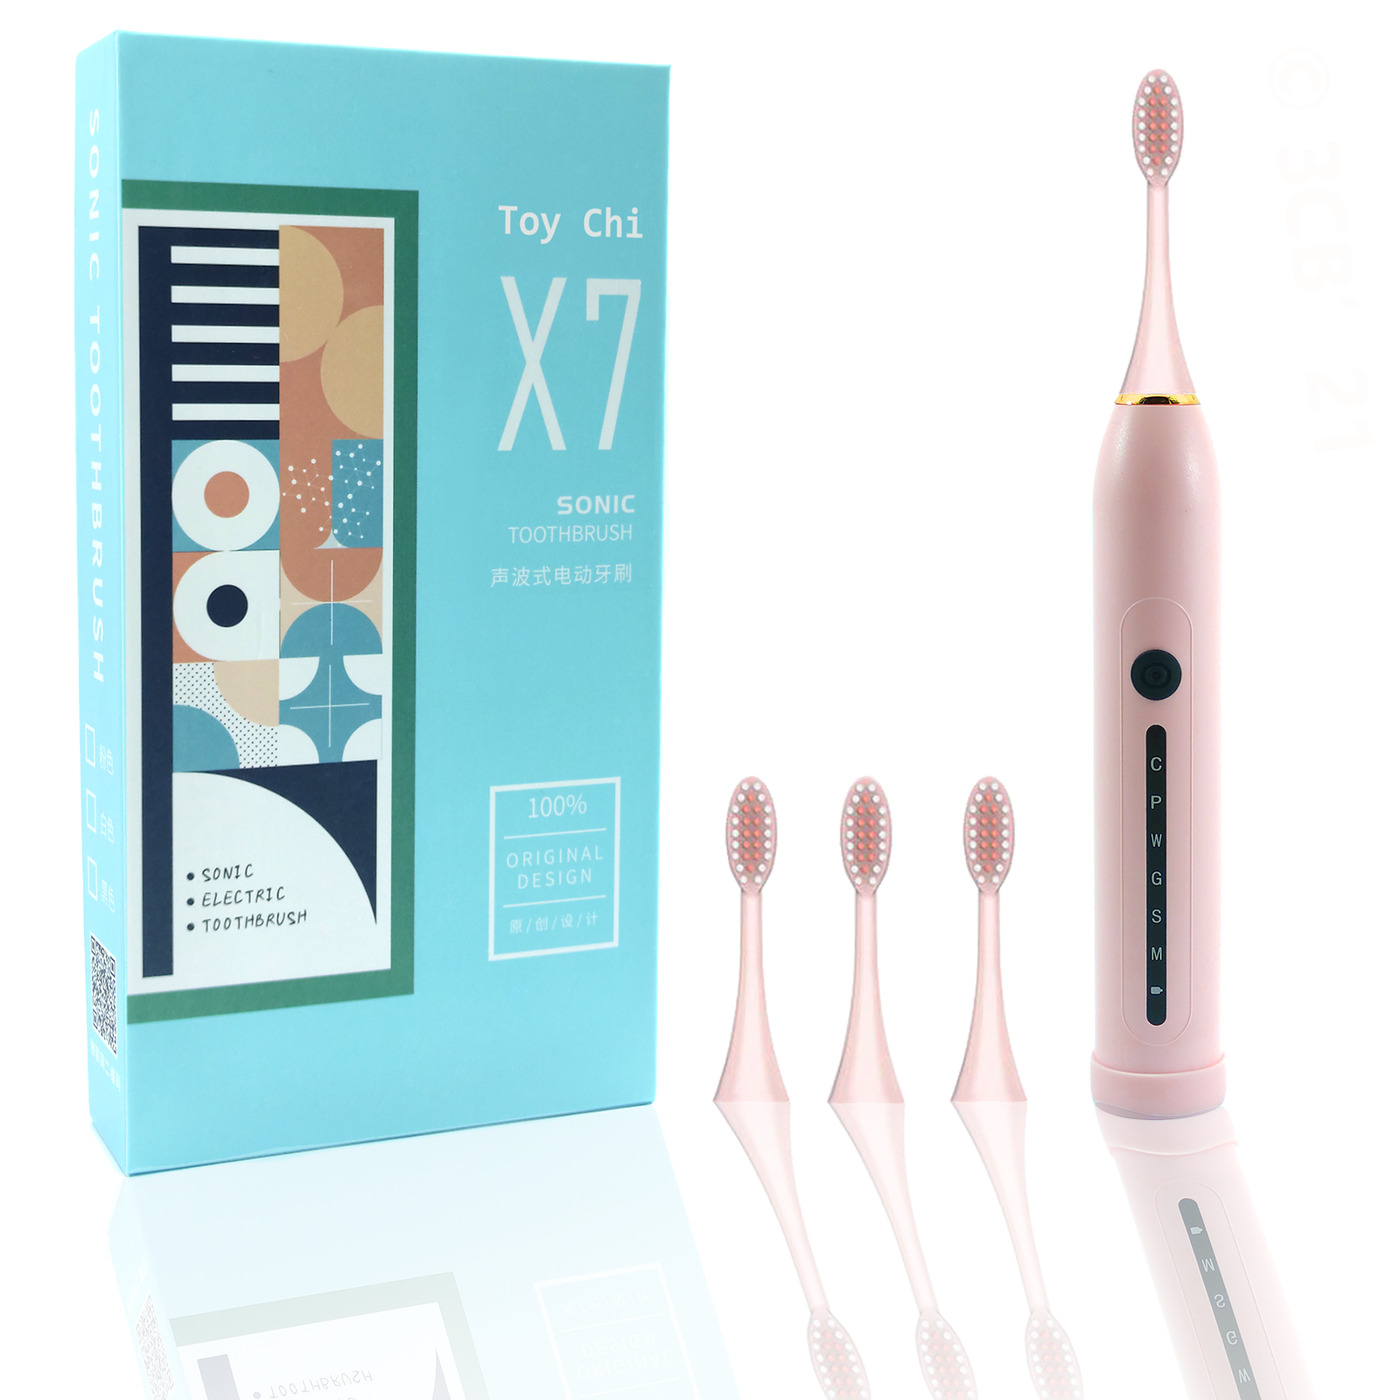 Электрическая зубная щетка ультразвуковая Toy Chi X7 SONIC Toothbrush, розовая электрическая зубная щетка dr bei k5 sonic голубой